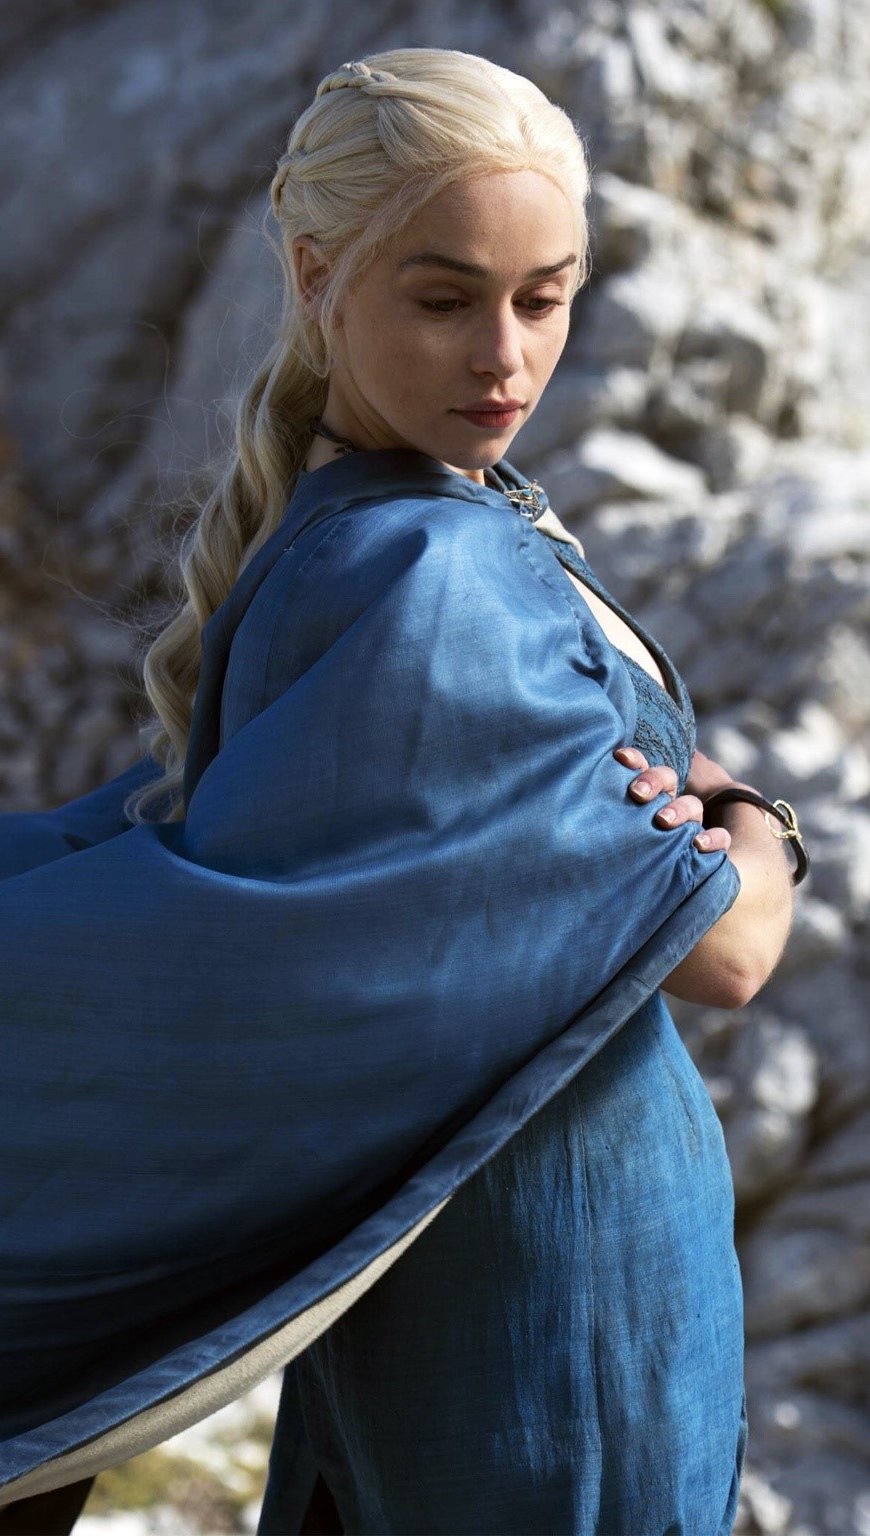 Fondos de pantalla Daenerys Targaryen en Juego de Tronos Vertical